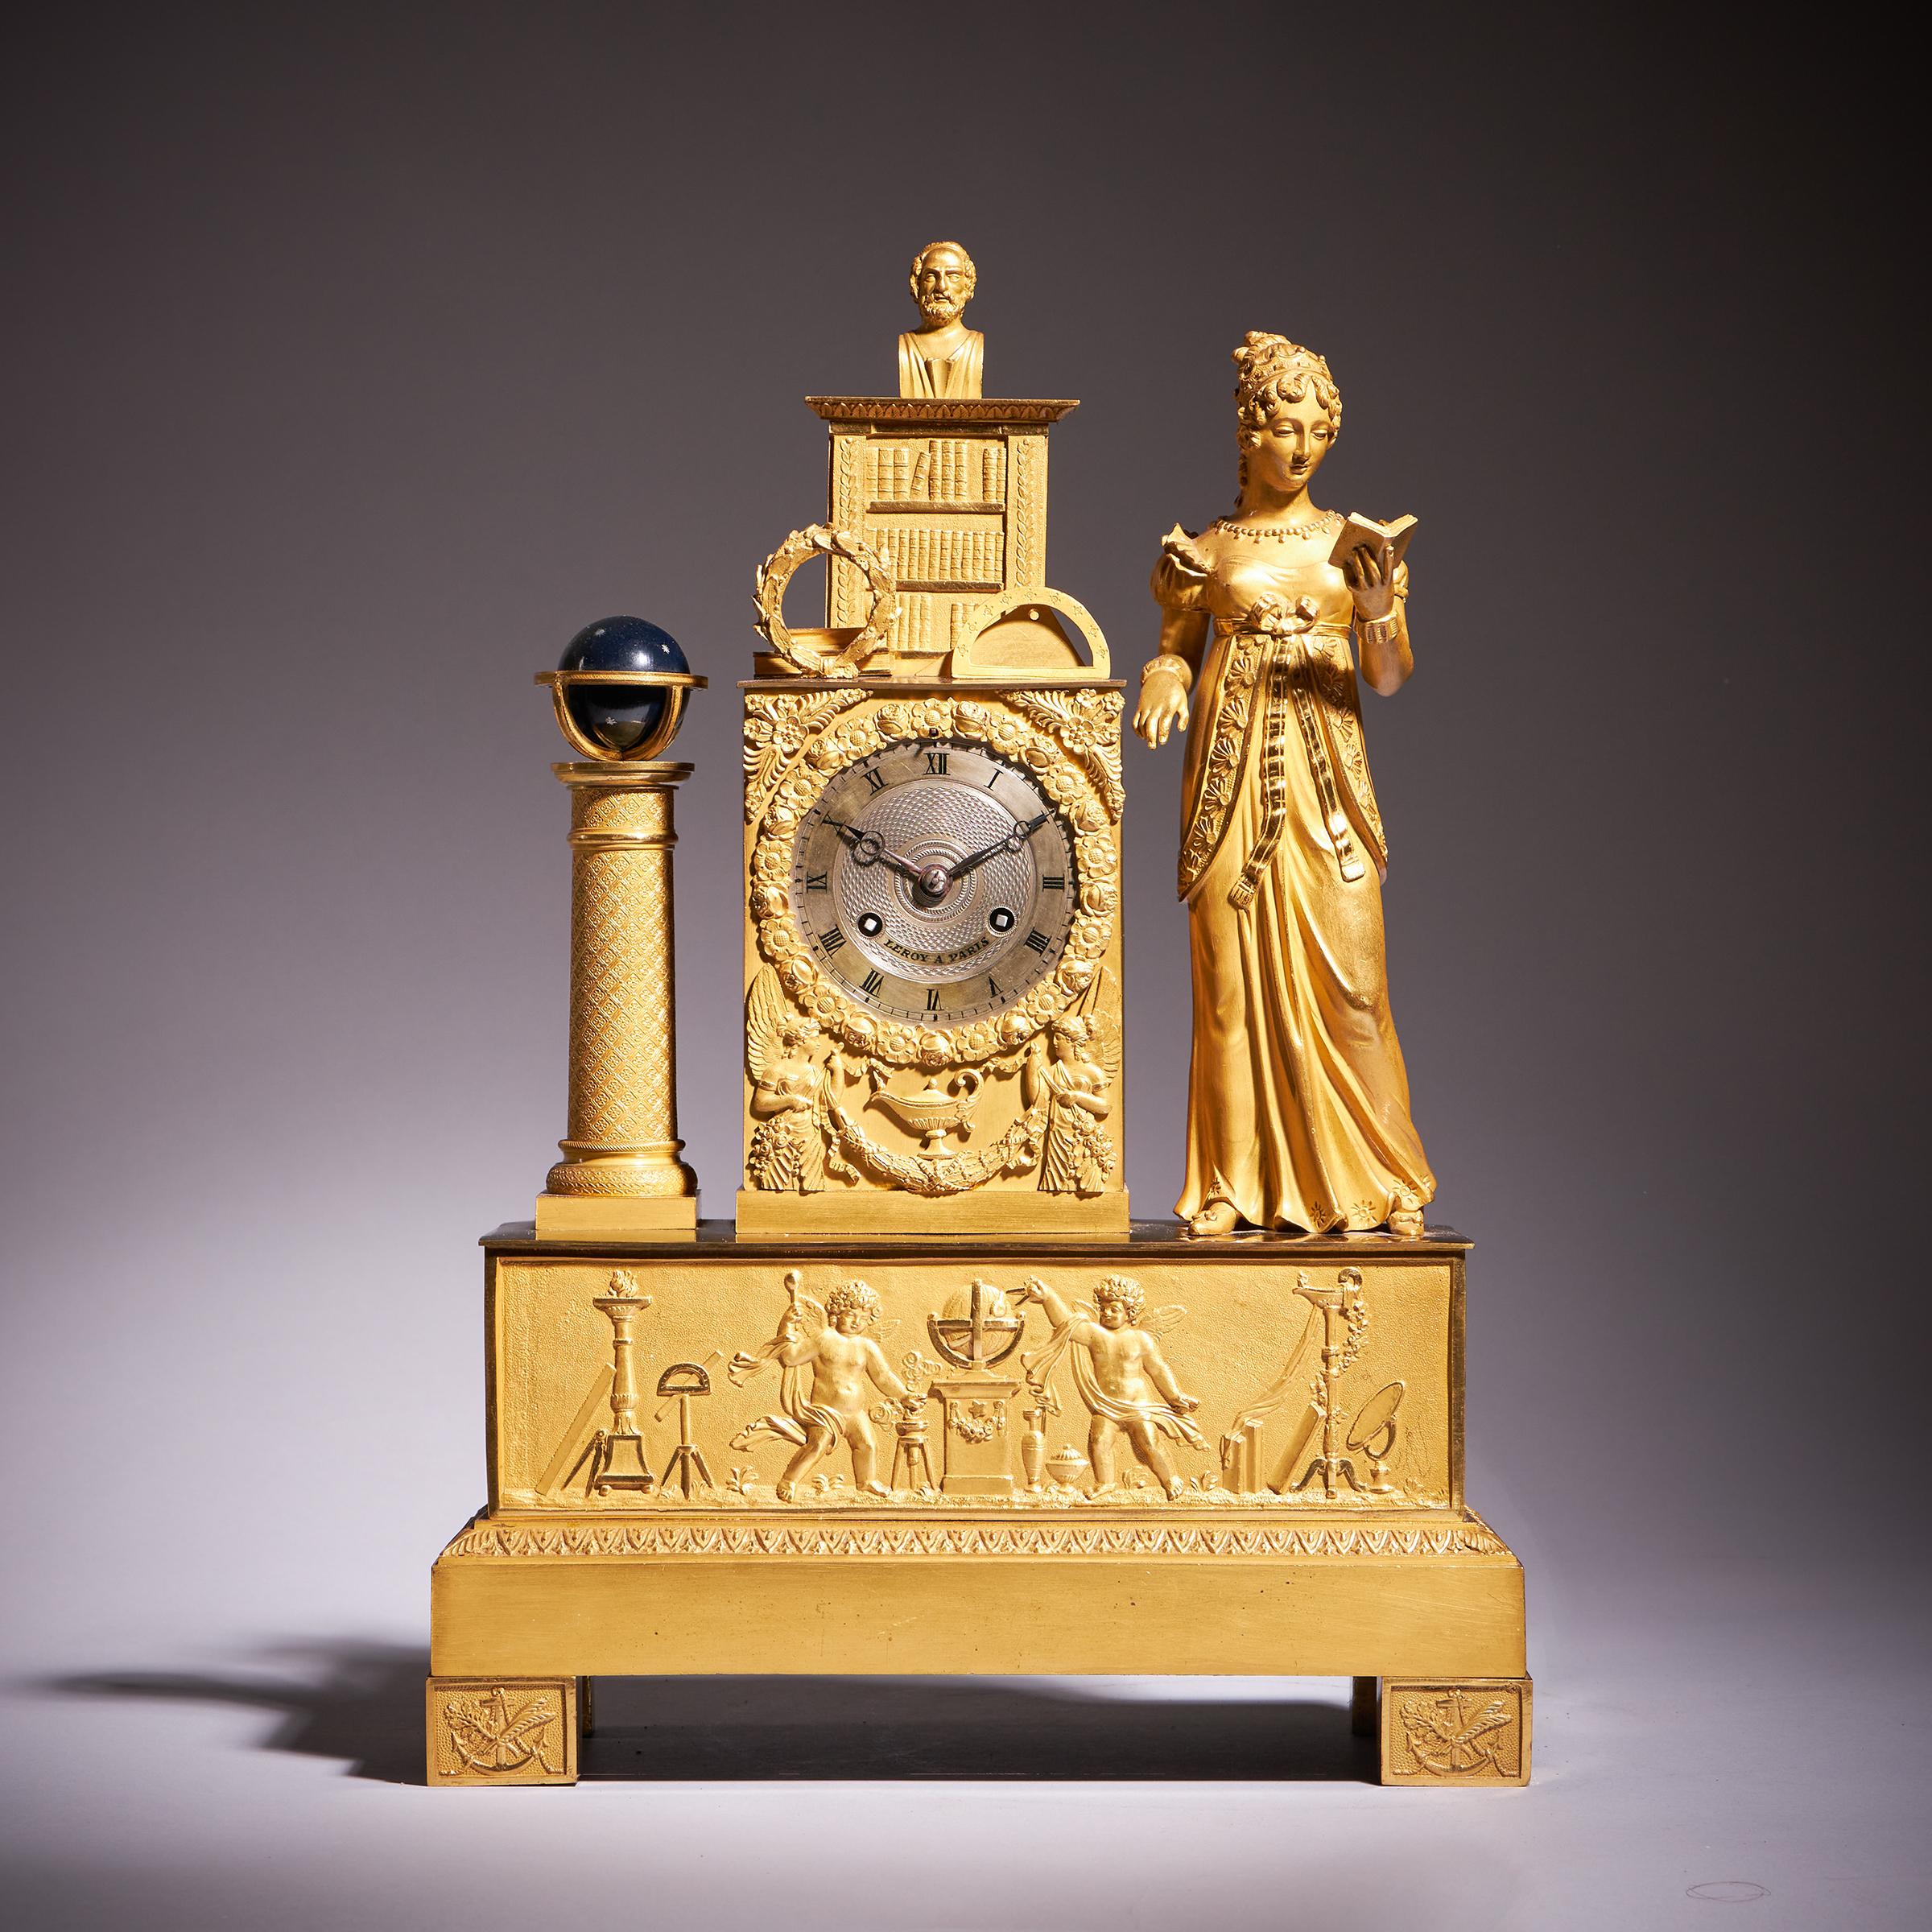 Très belle pendule de cheminée en bronze doré de LeRoy à Paris.

Charmante pendule de cheminée française de la fin de l'Empire/début Charles X avec un boîtier en bronze doré, vers 1825. Le boîtier en laiton doré représente une célébration de la